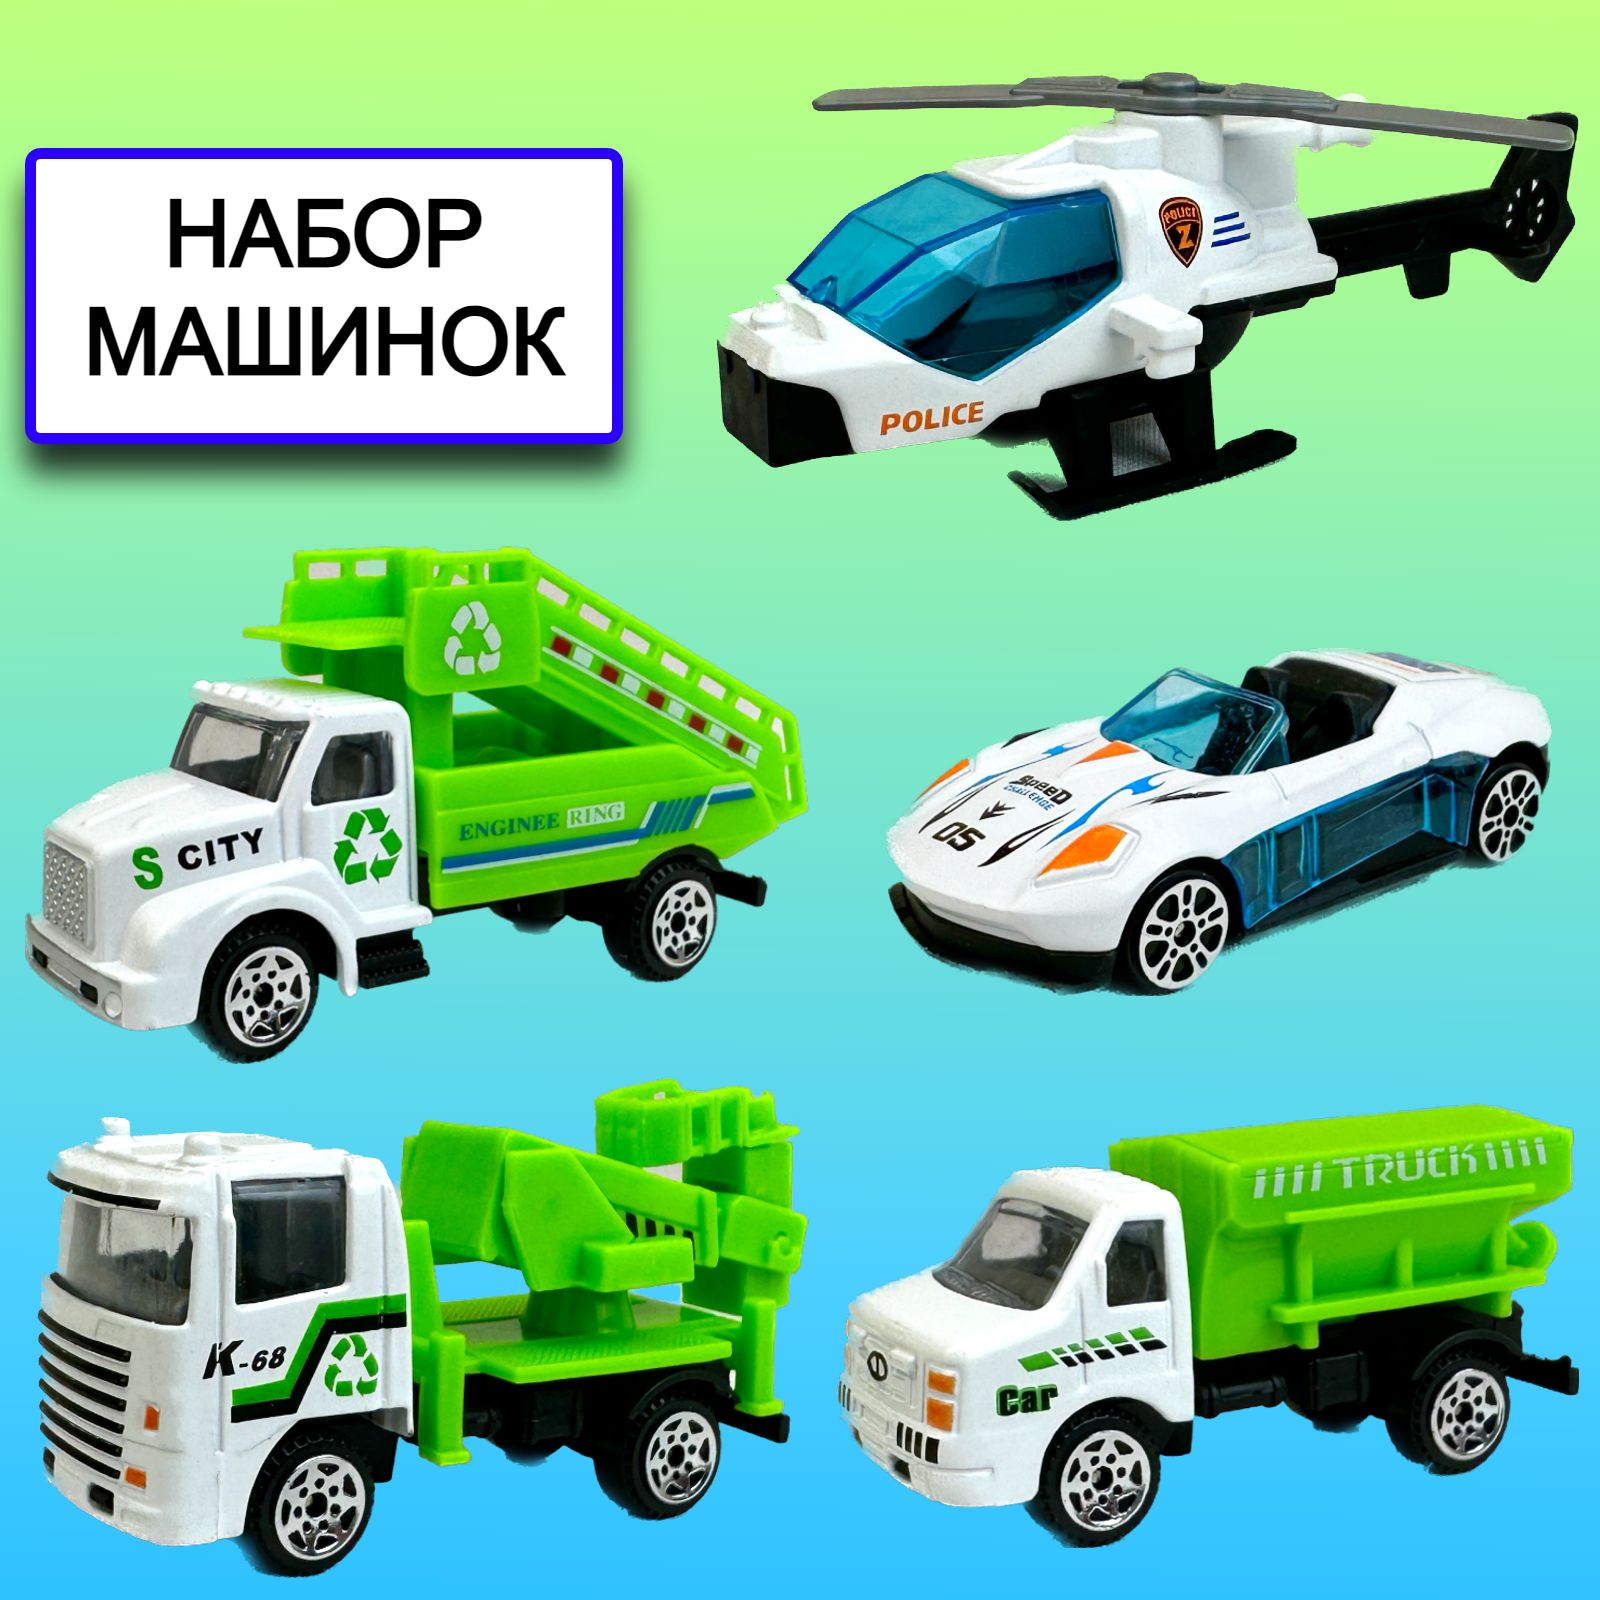 Набор металлических машинок Yako Toys, вертолет, металлические модели, 4 шт набор металлических машинок yako toys 5 моделей подвижные детали